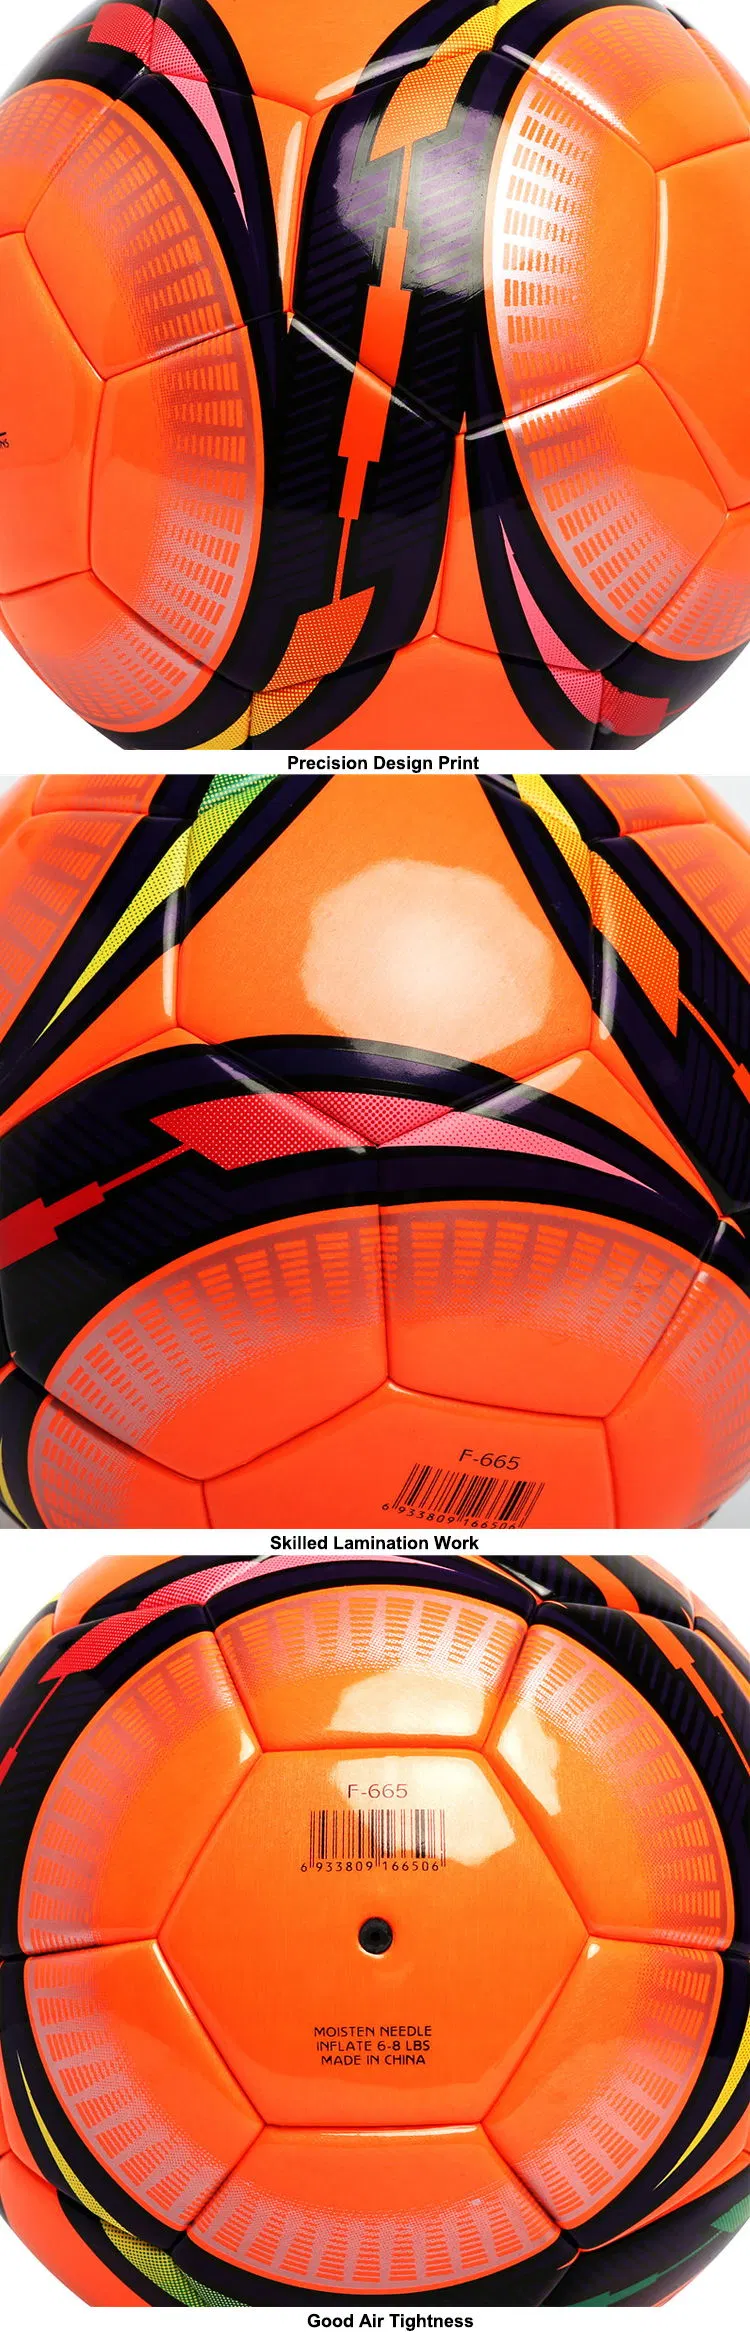 Colorful Branded Shiny PU Standard PRO Futsal Ball